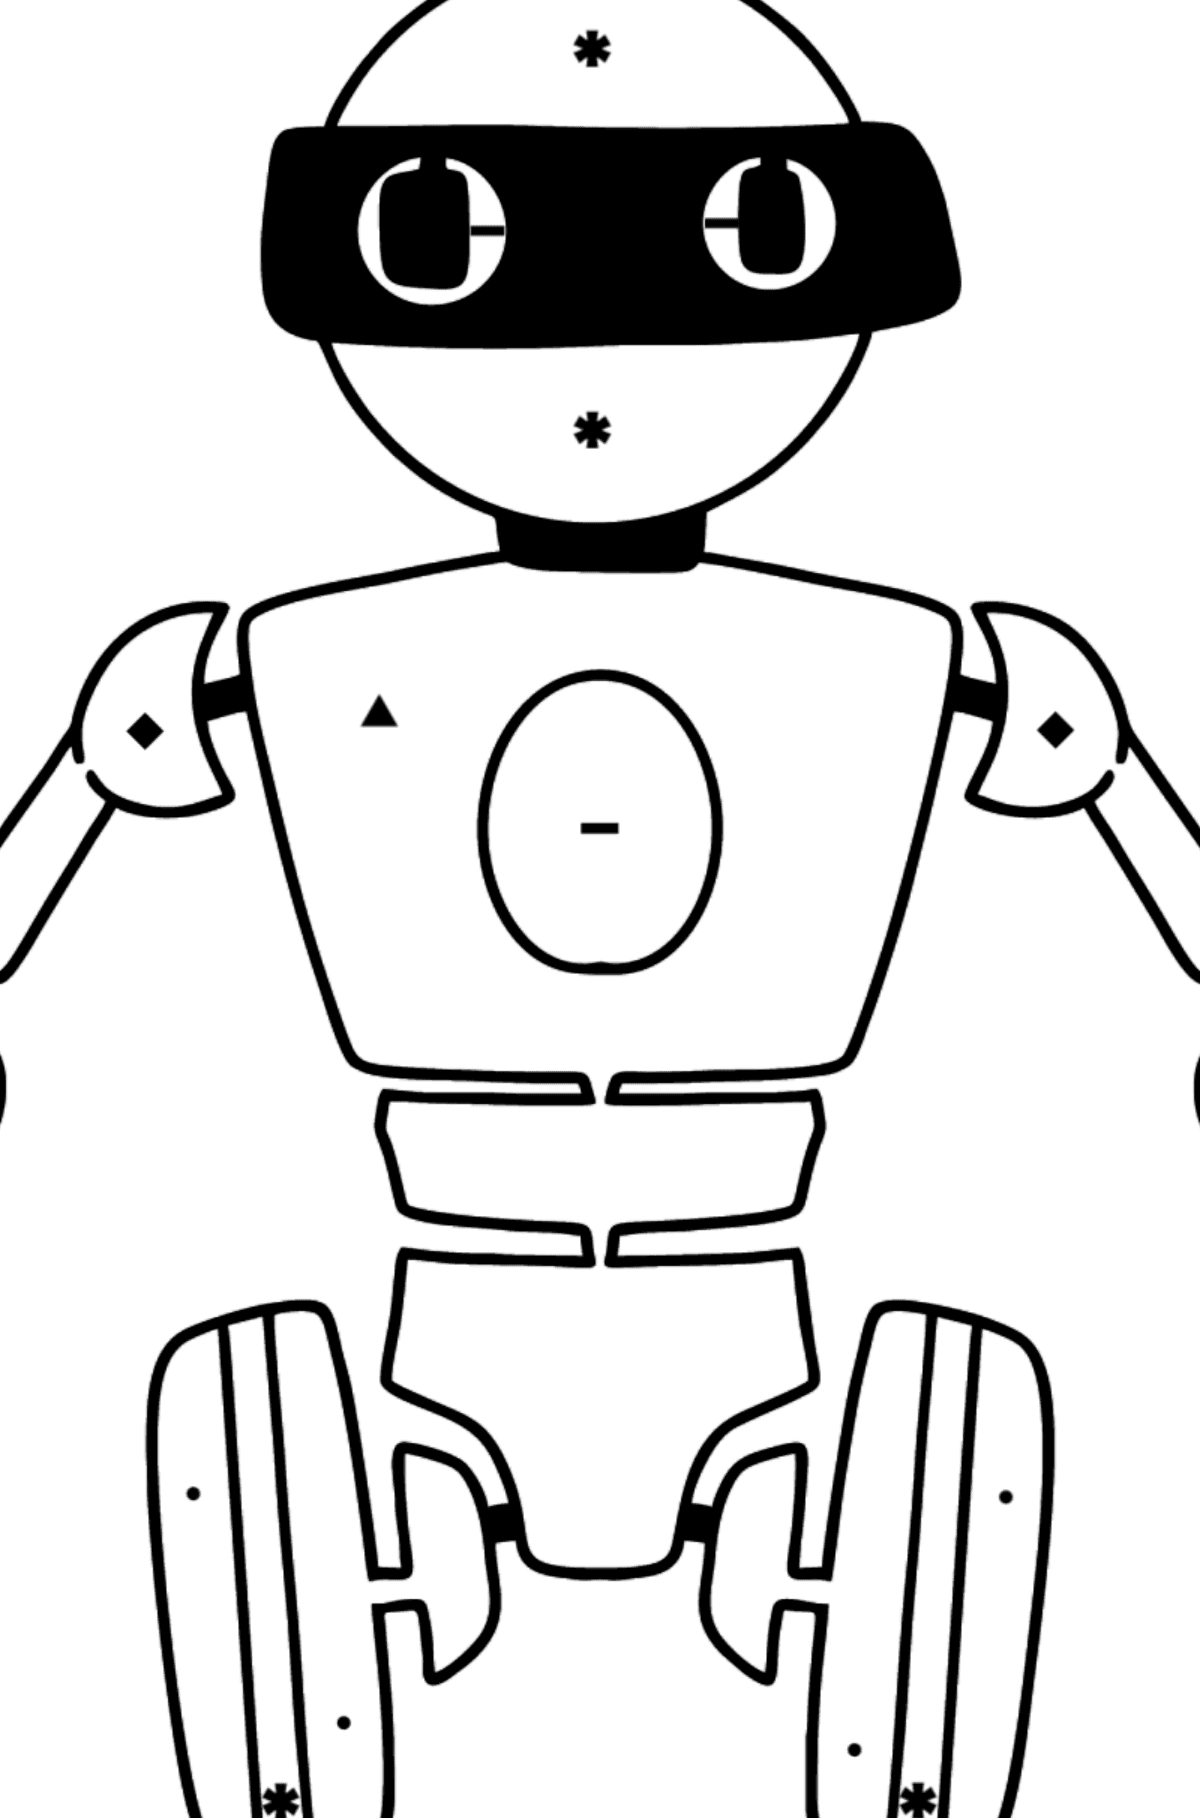 Coloriage - Robot de dessin animé - Coloriage par Symboles pour les Enfants